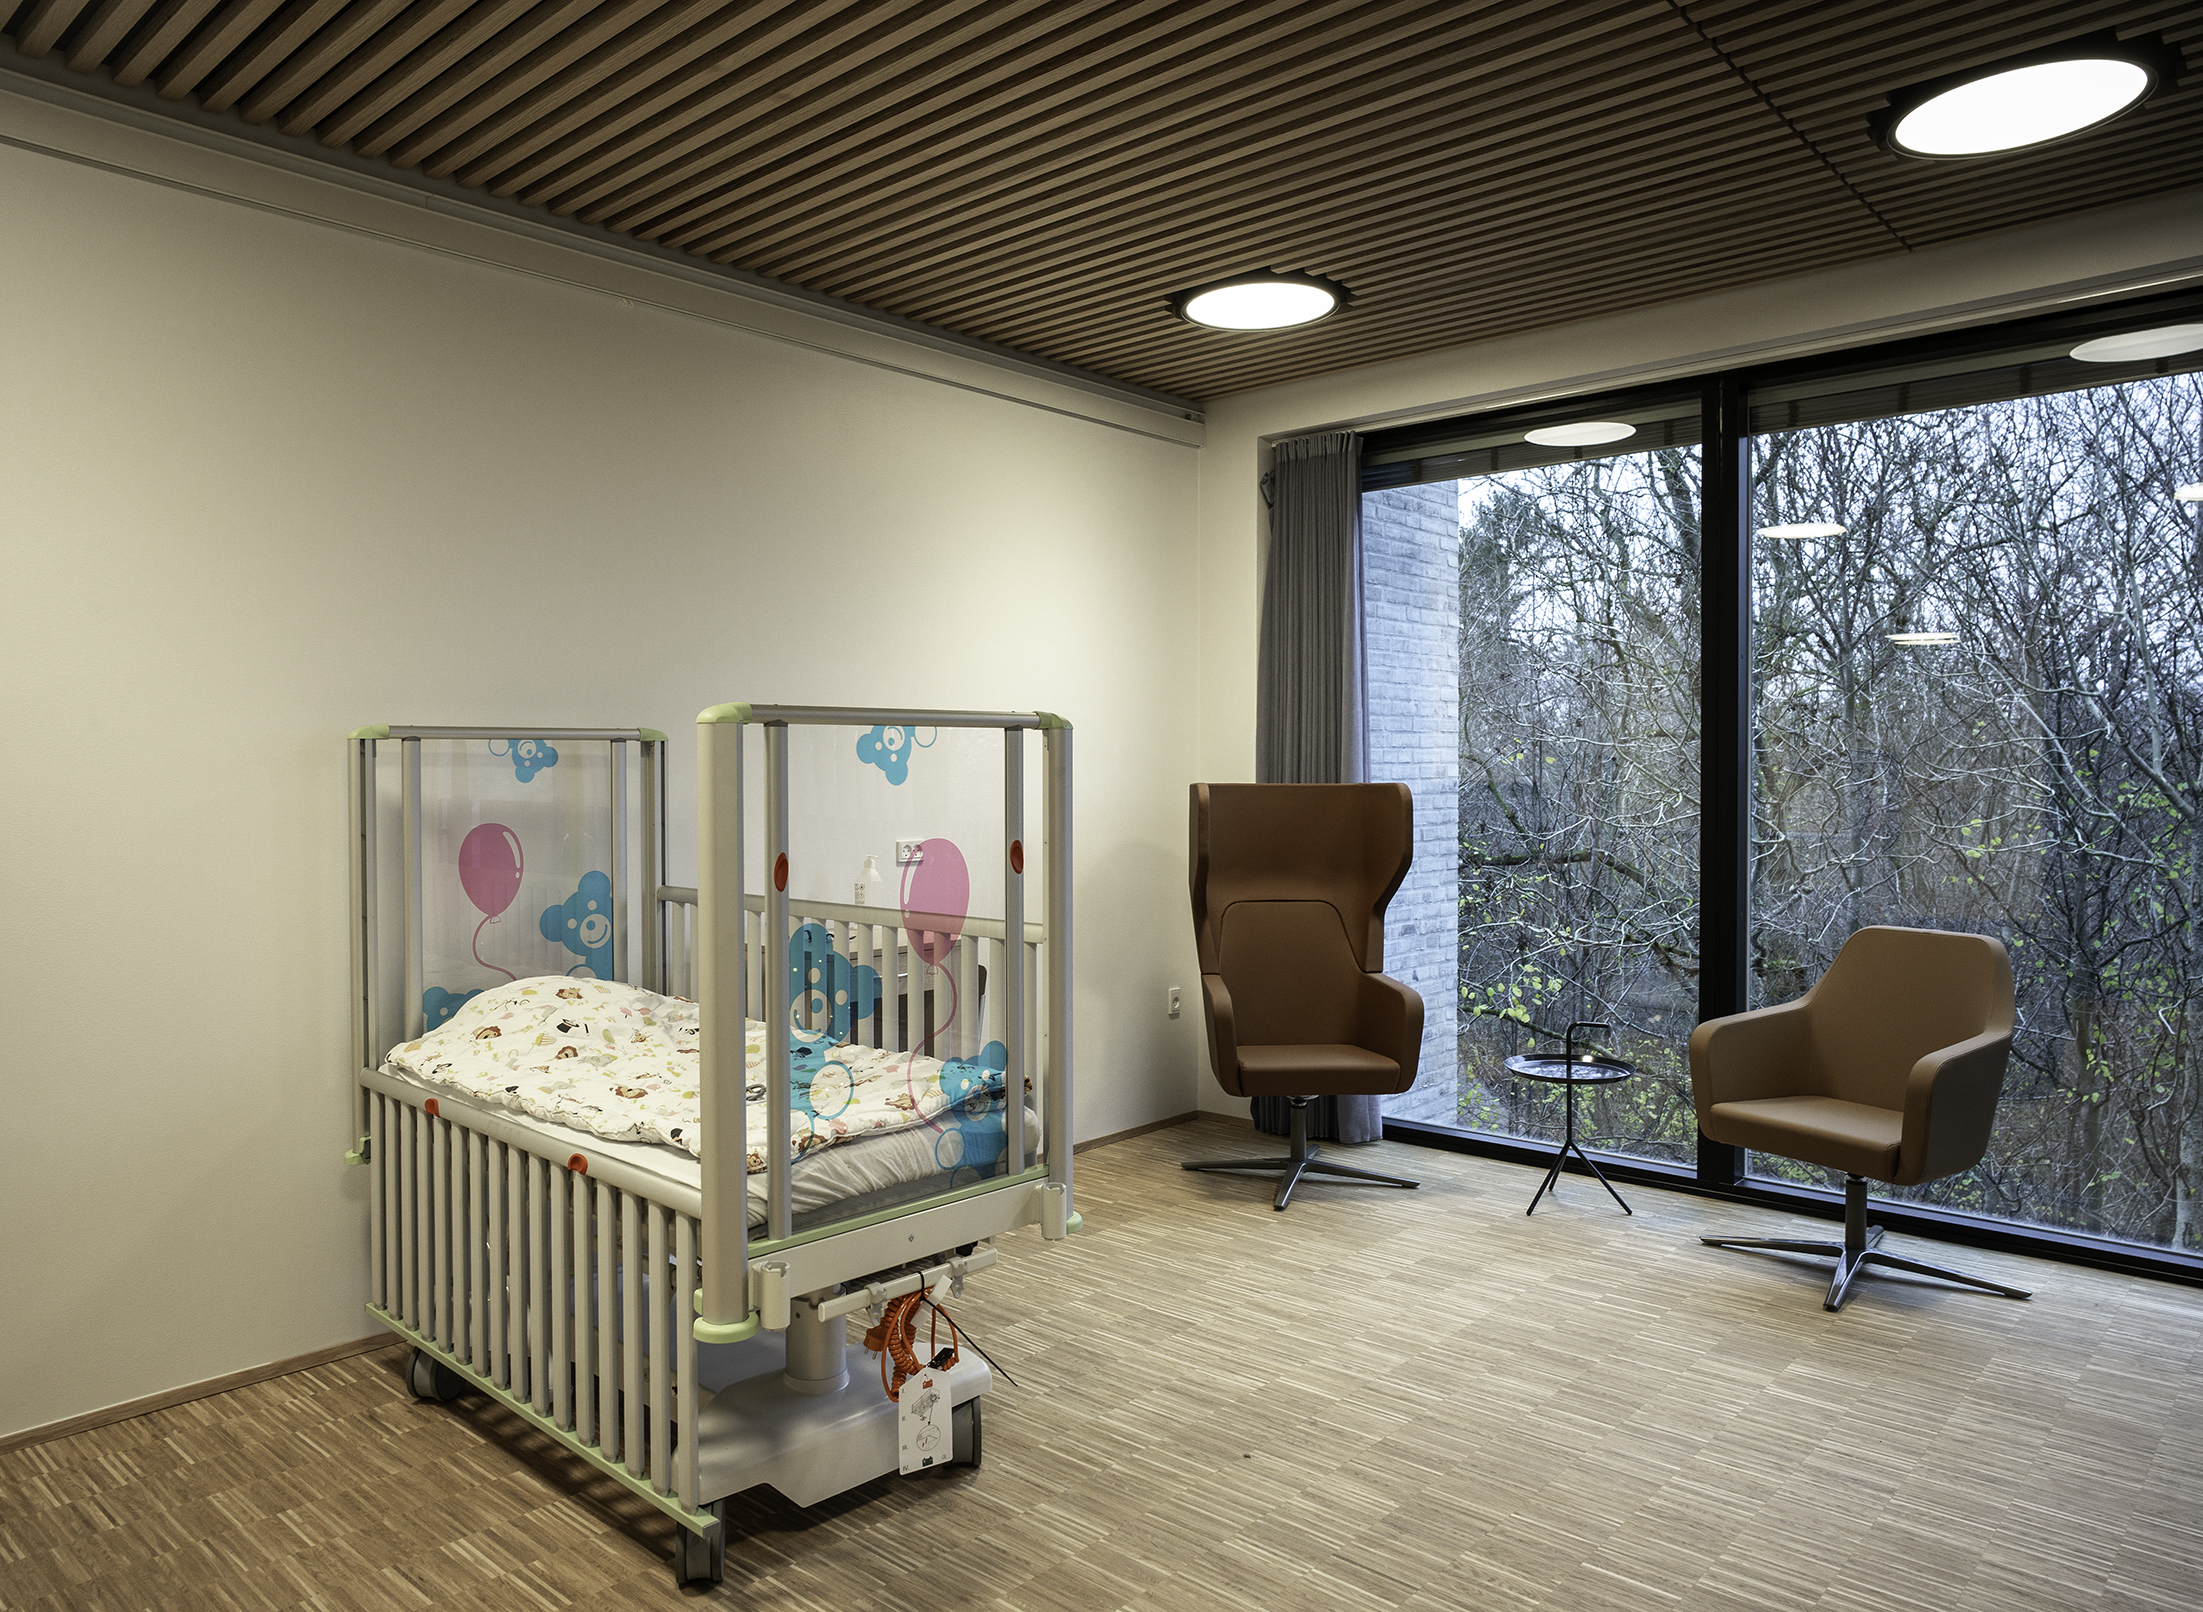 Værelse med sygehusseng til spædbarn og trælameller i loft